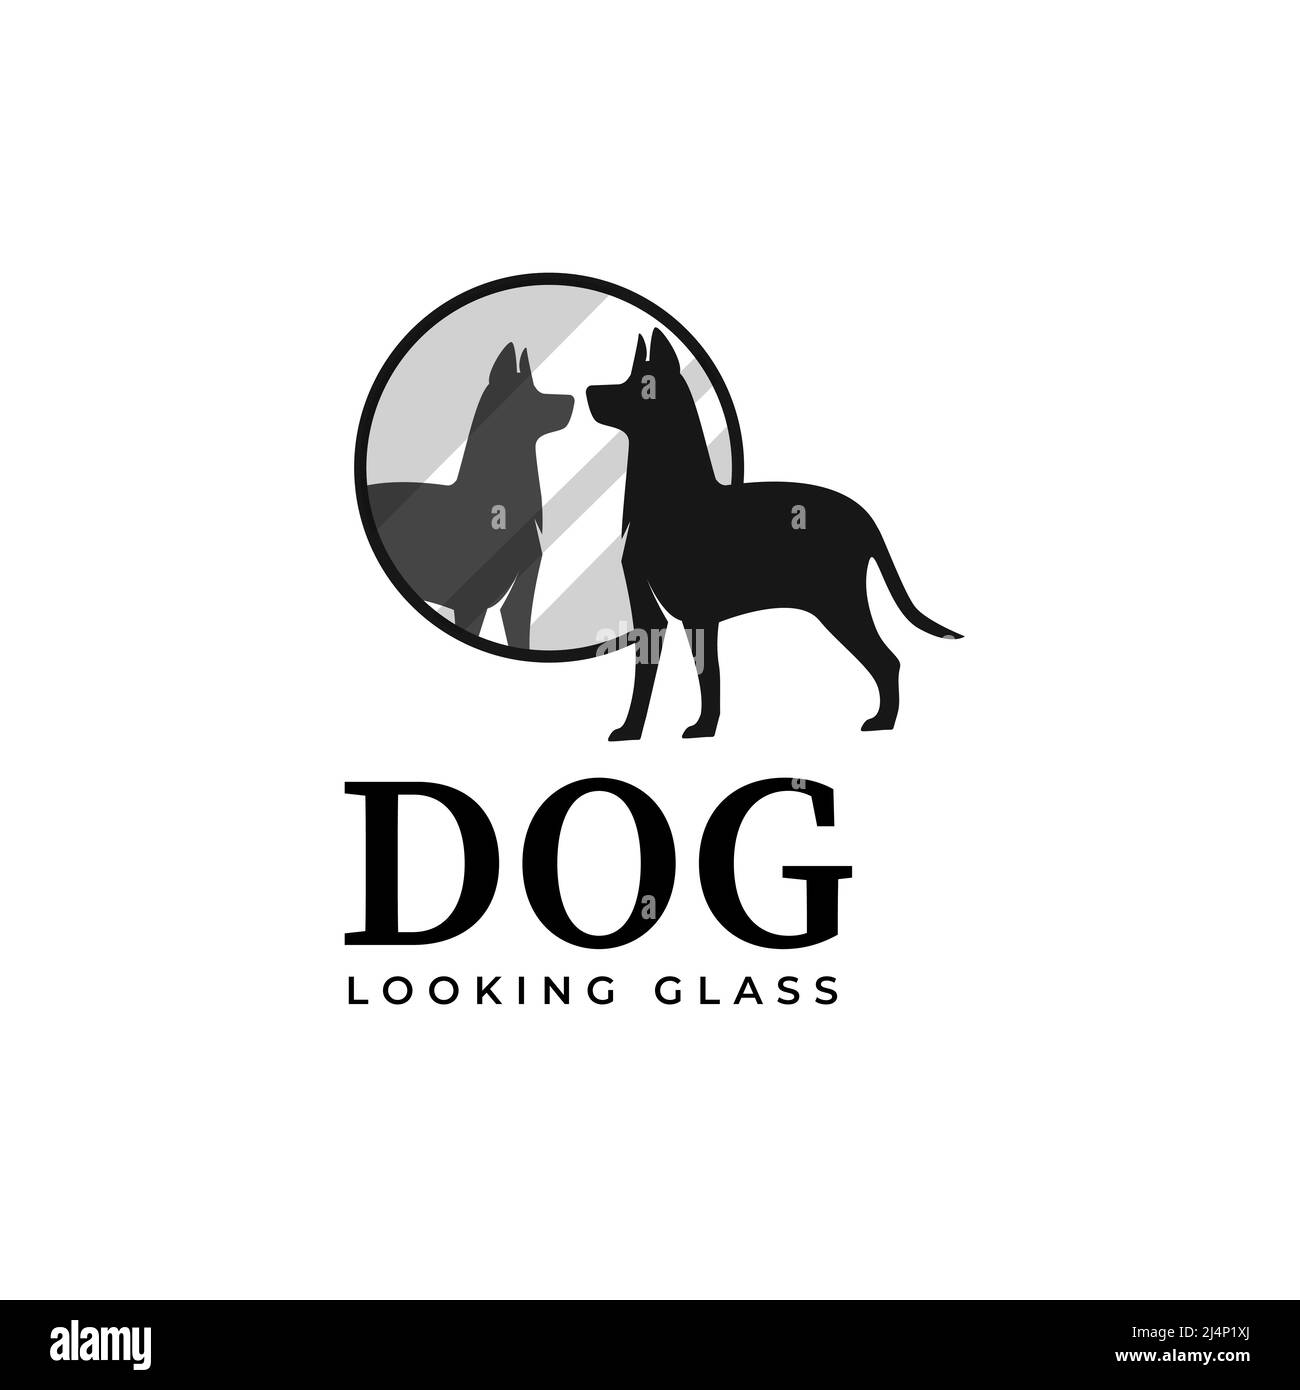 Silhouette illustrazione di curioso cane guardando nello specchio, immagine di un cane nel disegno vettoriale specchio Illustrazione Vettoriale